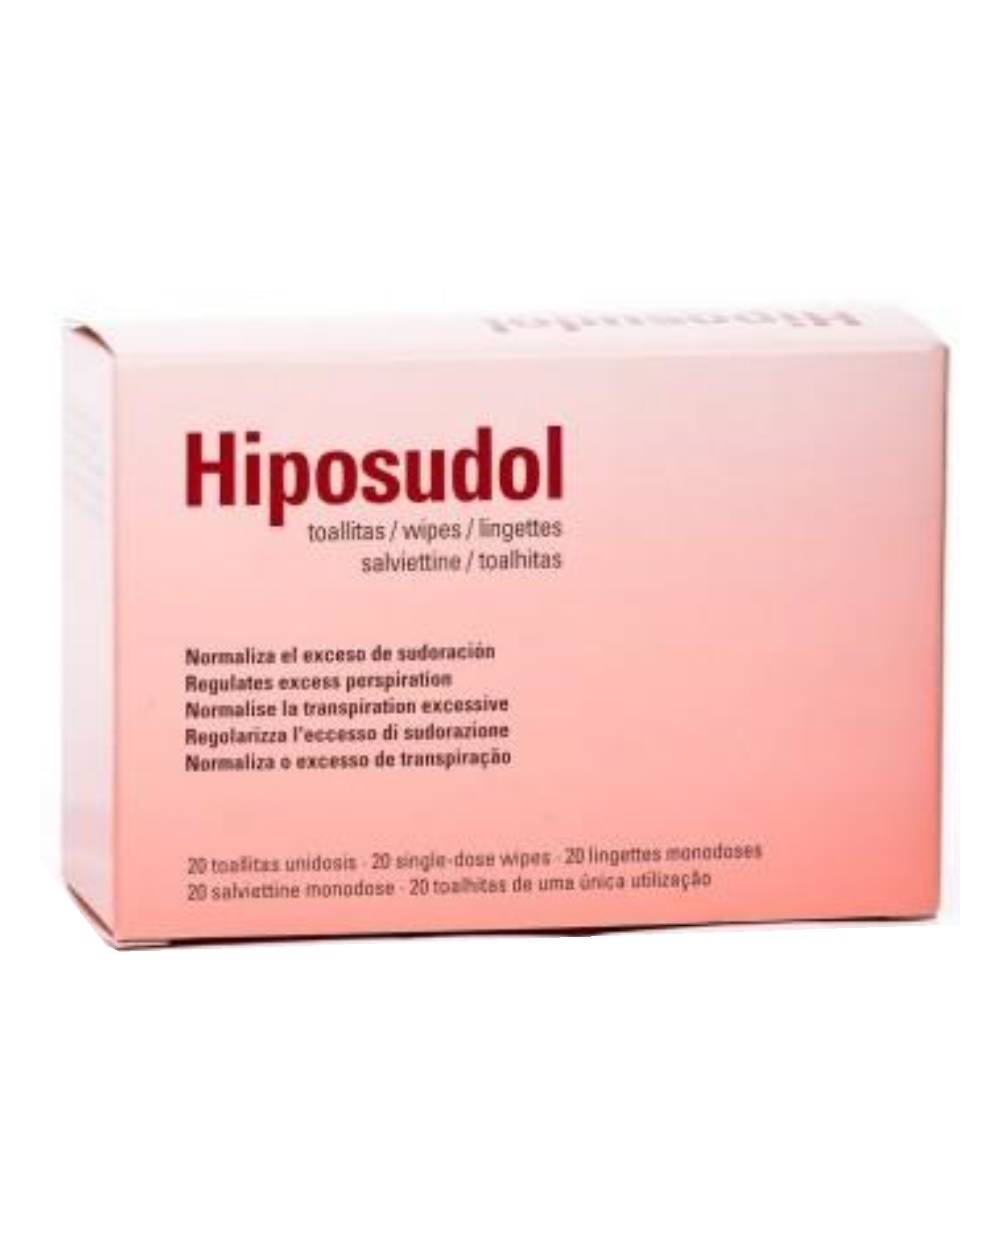 Hiposudol - 20 toallitas